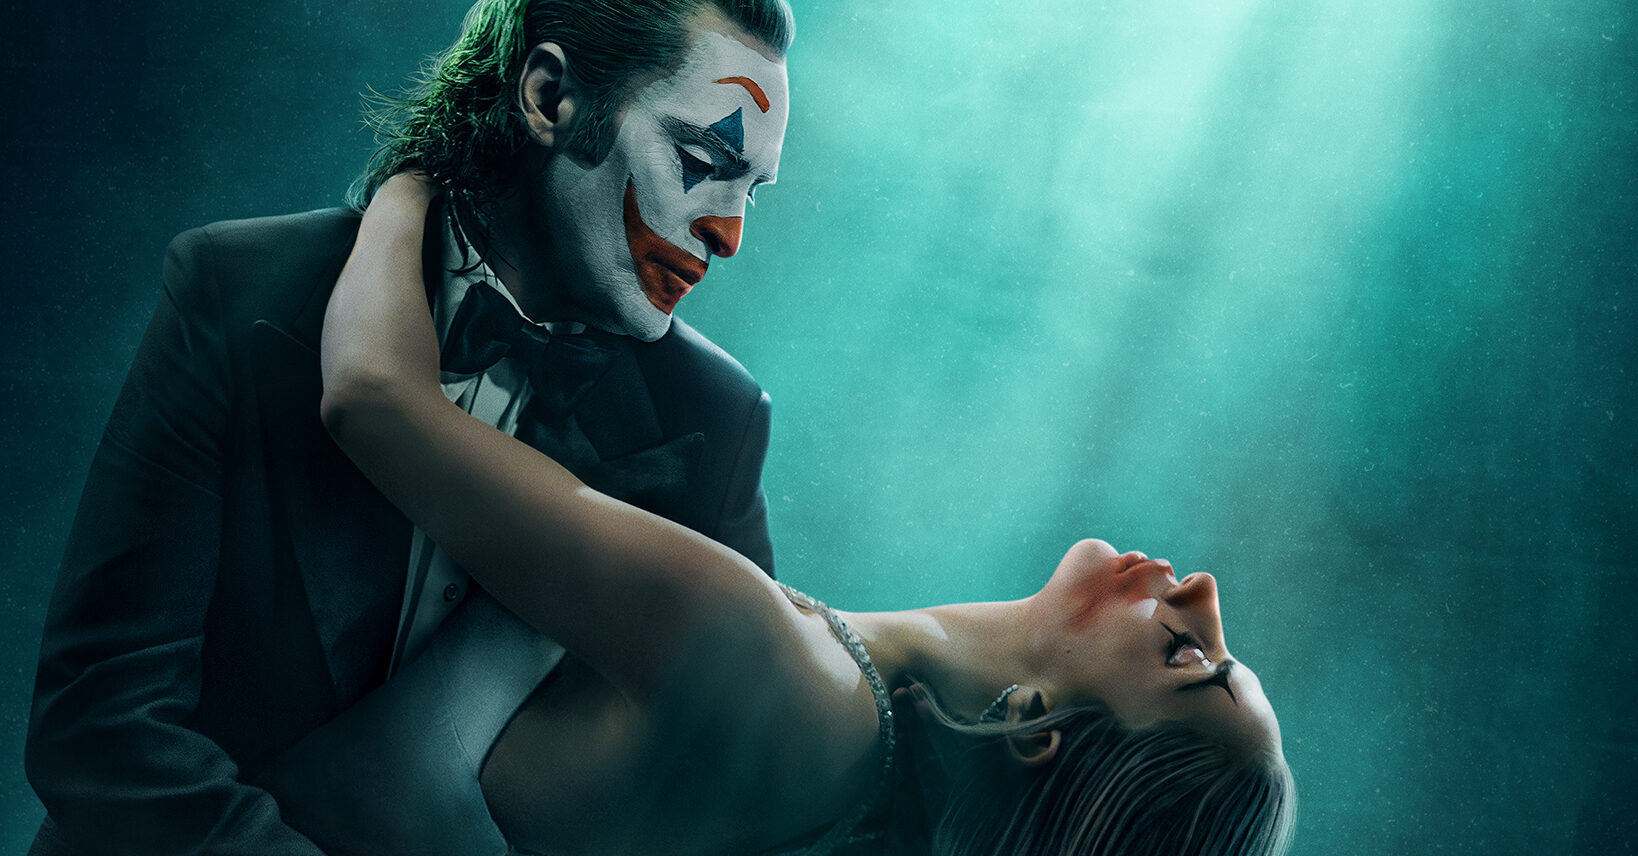 Joker: Folie à Deux - Uscita anticipata di due giorni in Italia rispetto agli USA